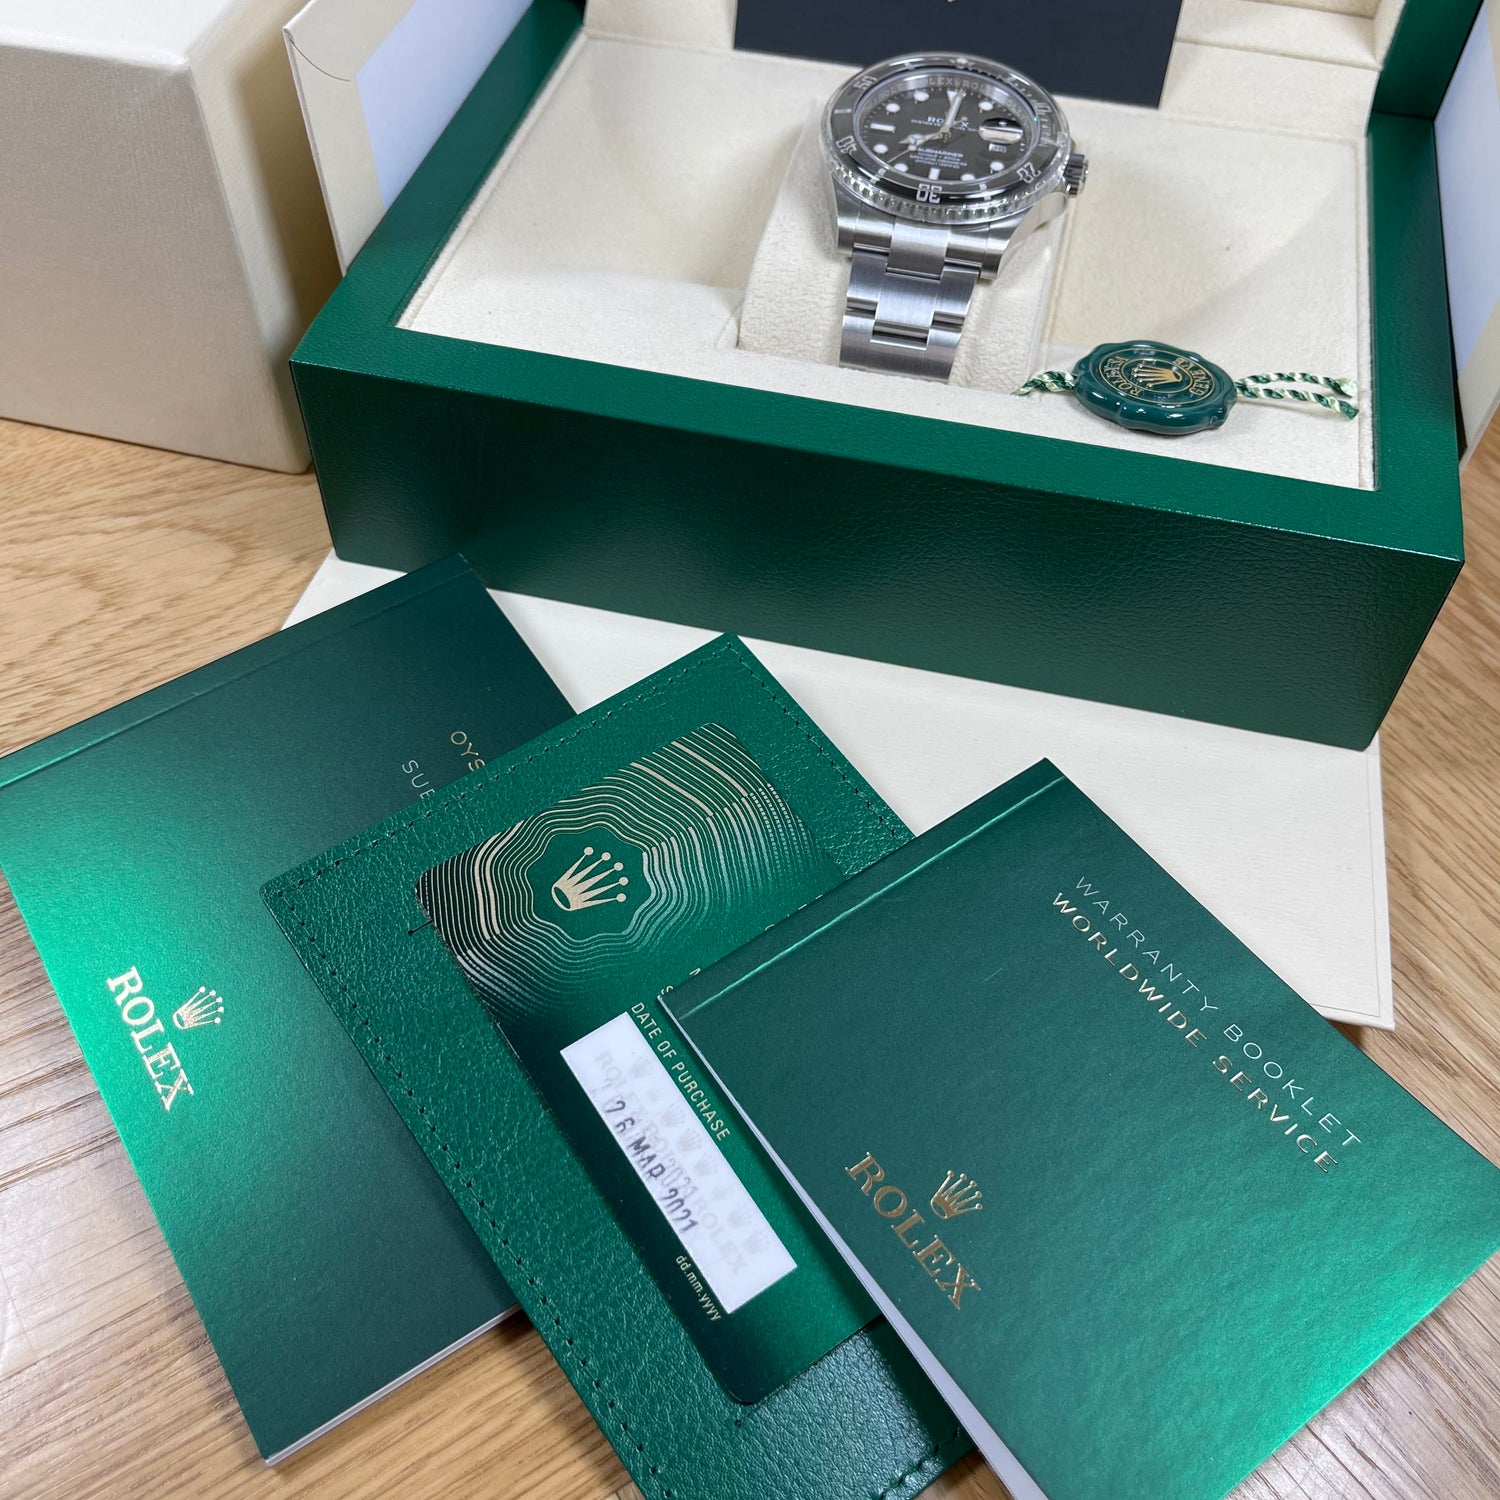 Rolex Submariner Date 126610LN 41mm Brand New 2021 Watch